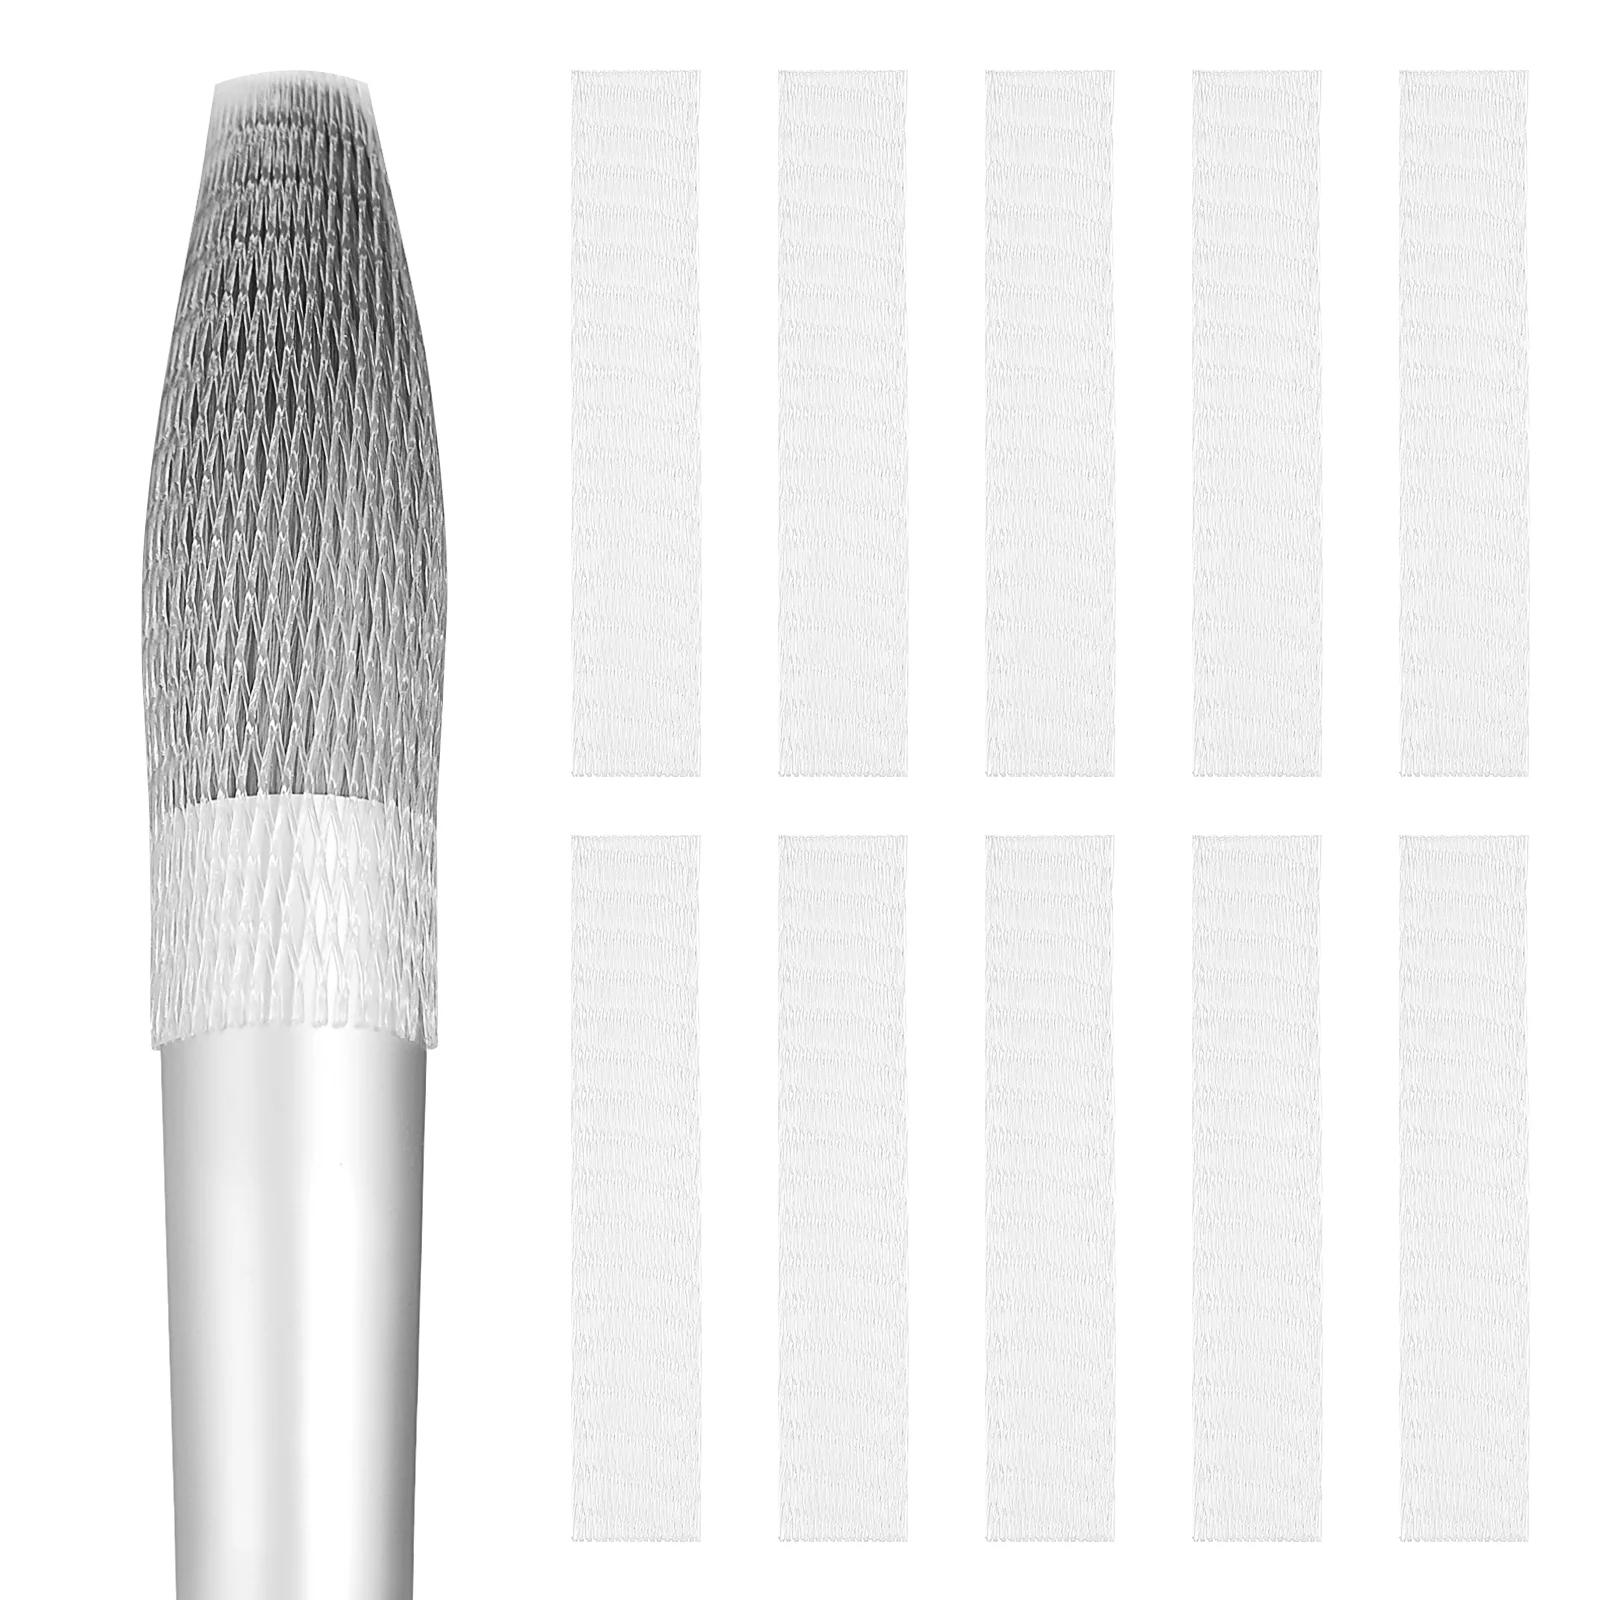 

Supvox 6x1.1CM Makeup Brushes Pen Guard Protector Set Reusable Expandable Makeup Tool Mesh Cover